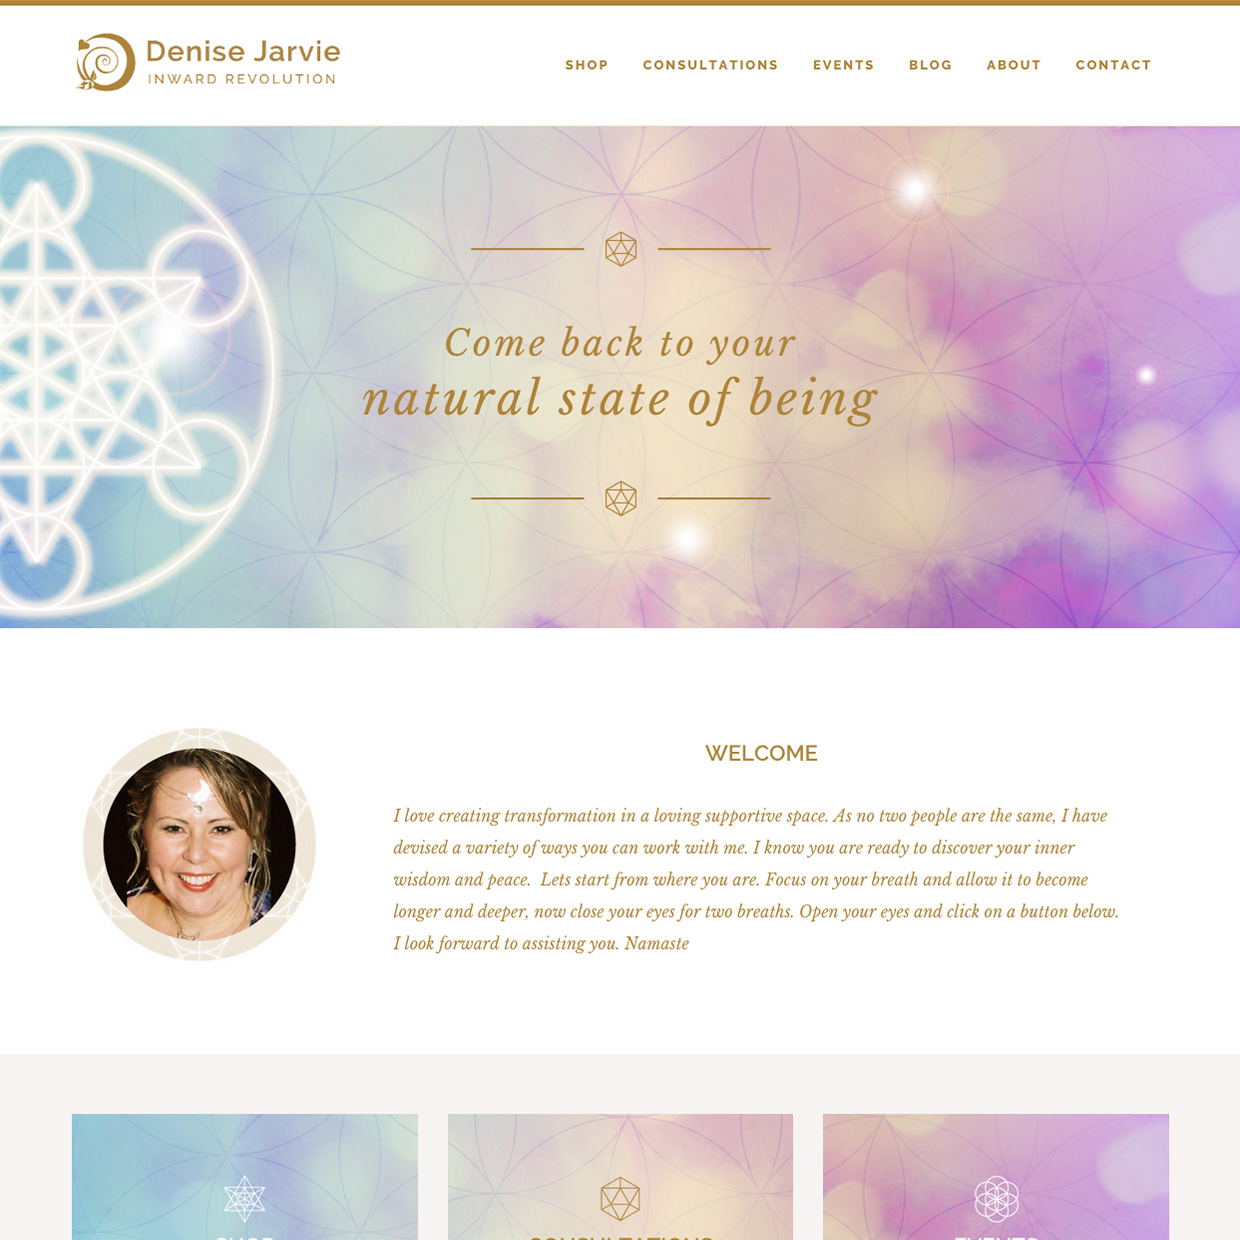 Denise Jarvie website design by Frances Verbeek